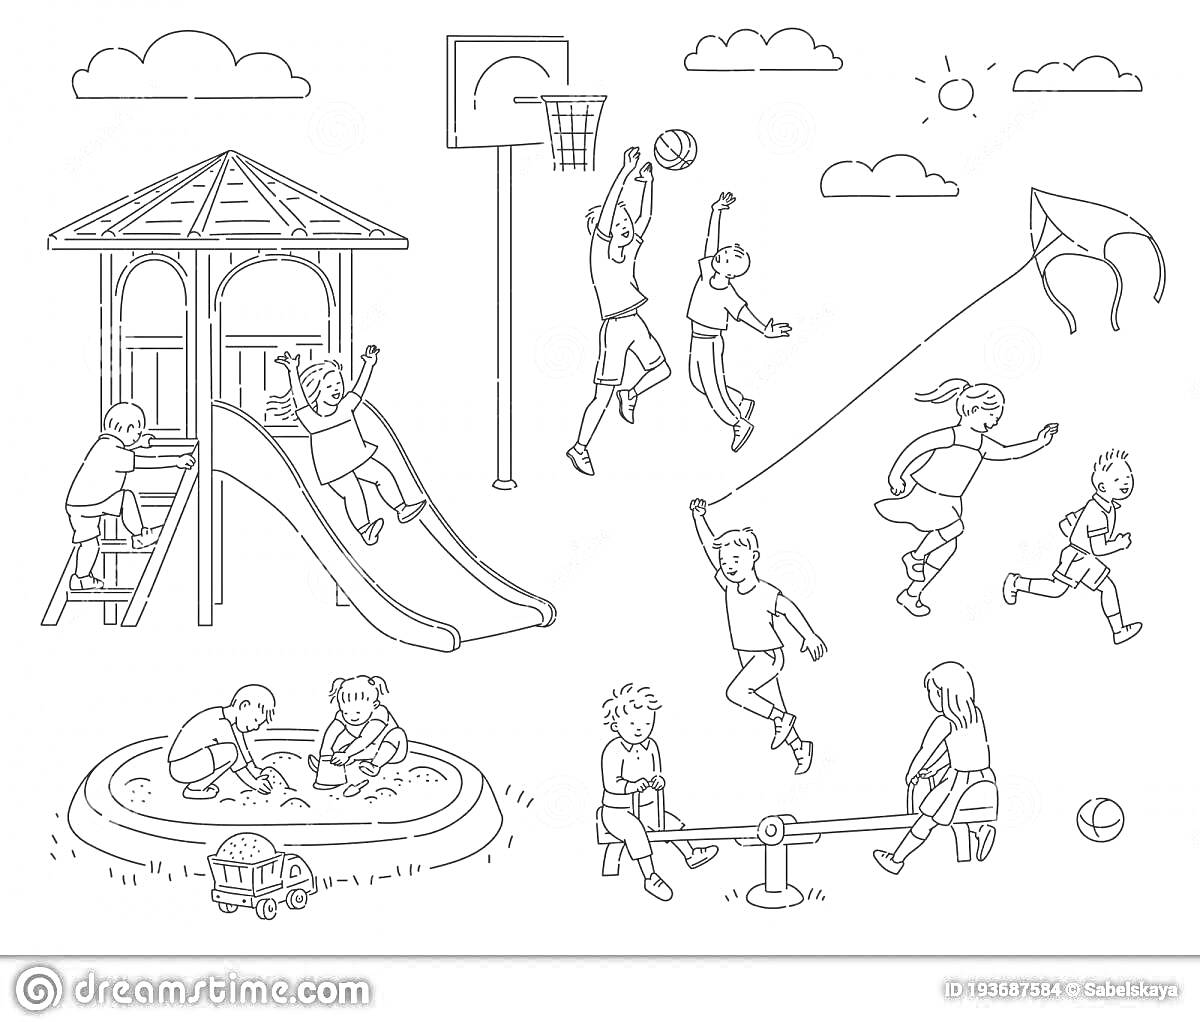 На раскраске изображено: Площадка, Горка, Баскетбольное кольцо, Качели, Песочница, Воздушный змей, Солнце, Облака, Игра, Отдых